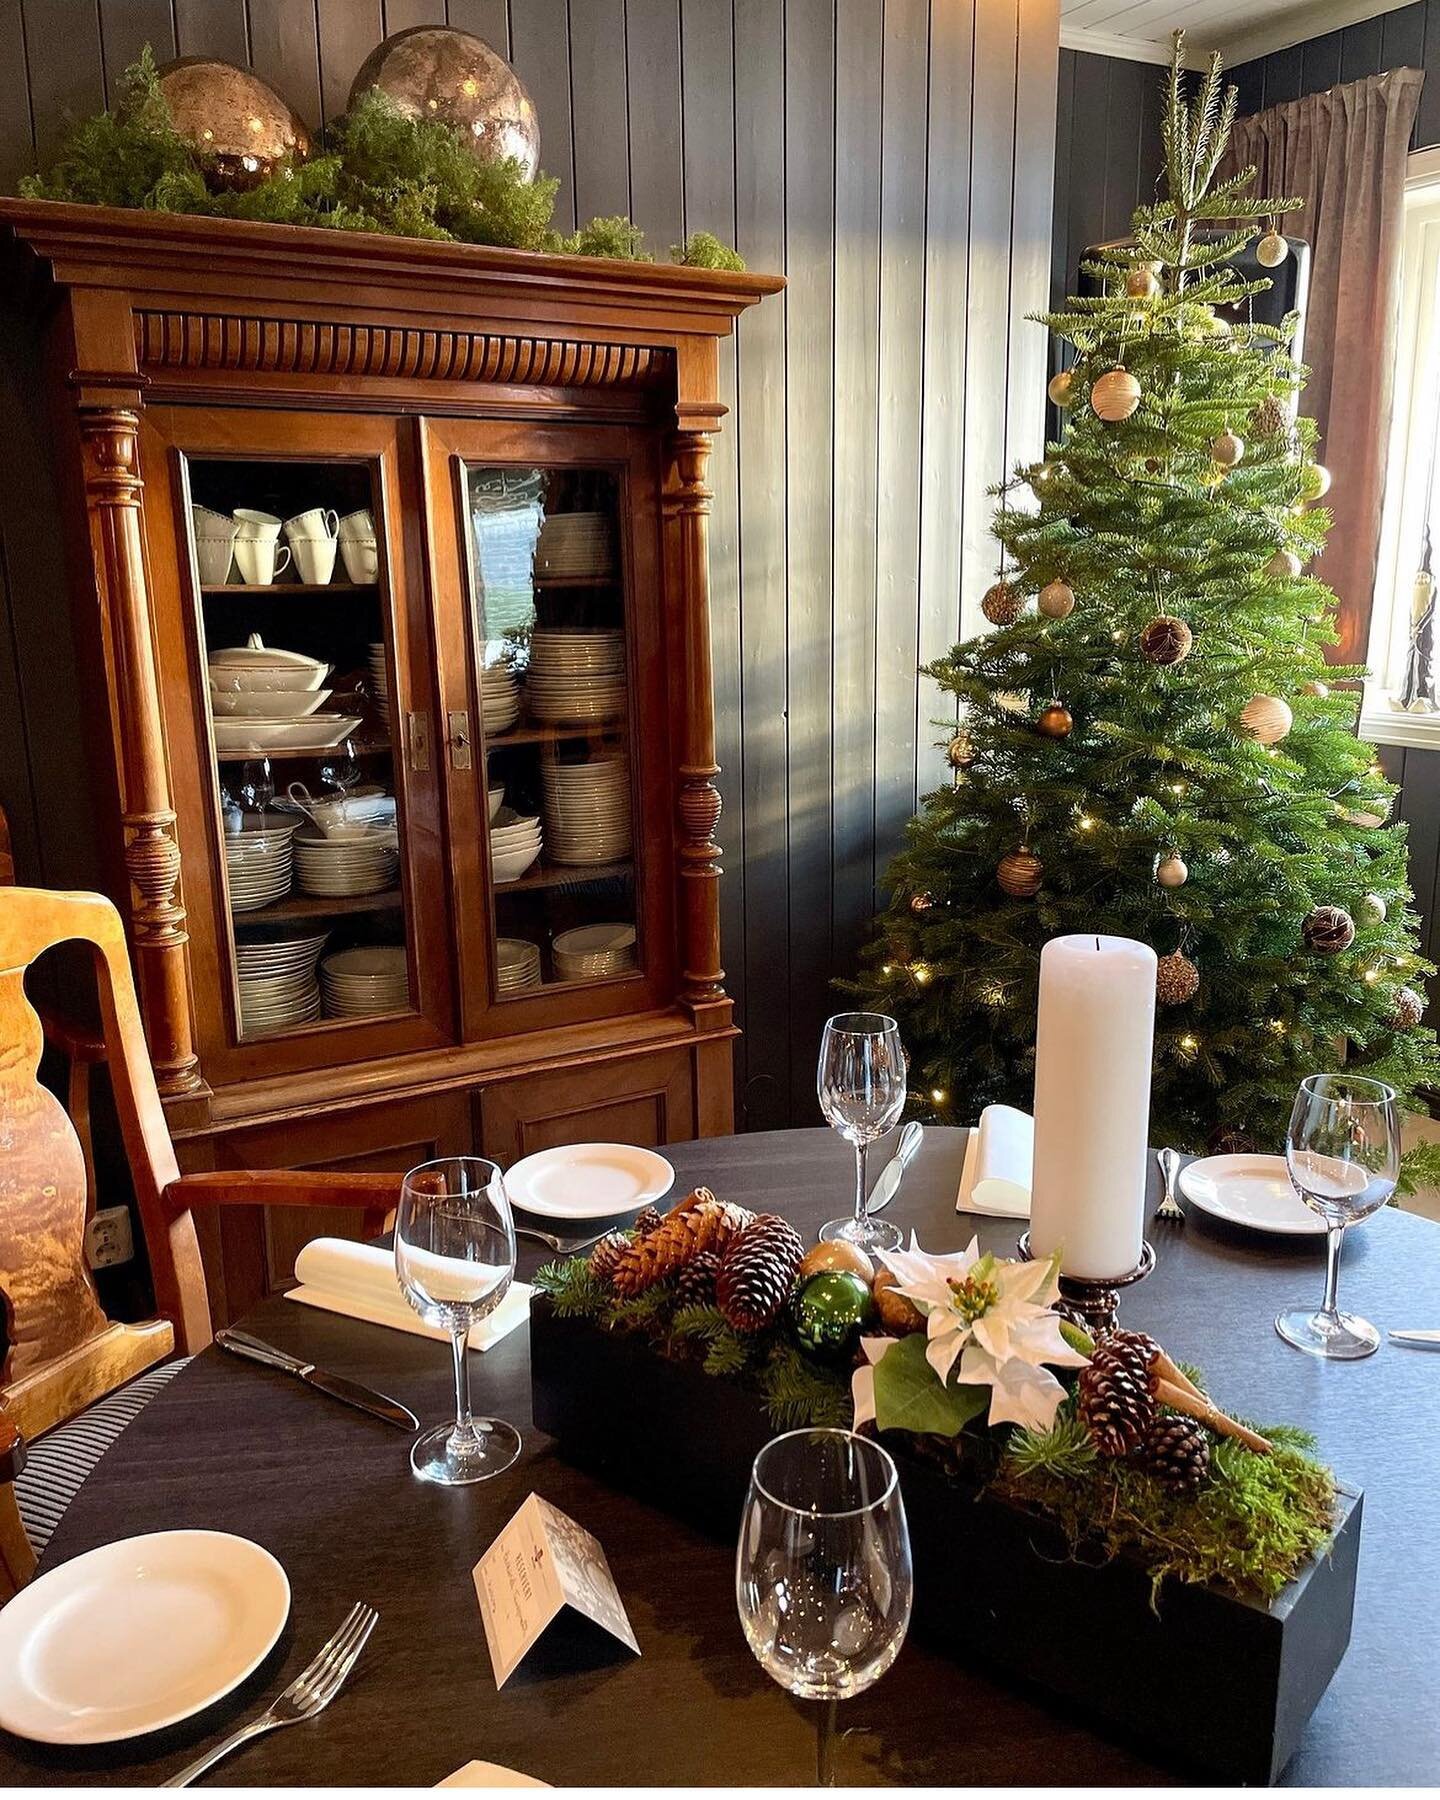 Vakkert julepyntet p&aring; #lampelandhotell . Julebordsesongen er i gang 🎄#flesberg #numedal #julebord